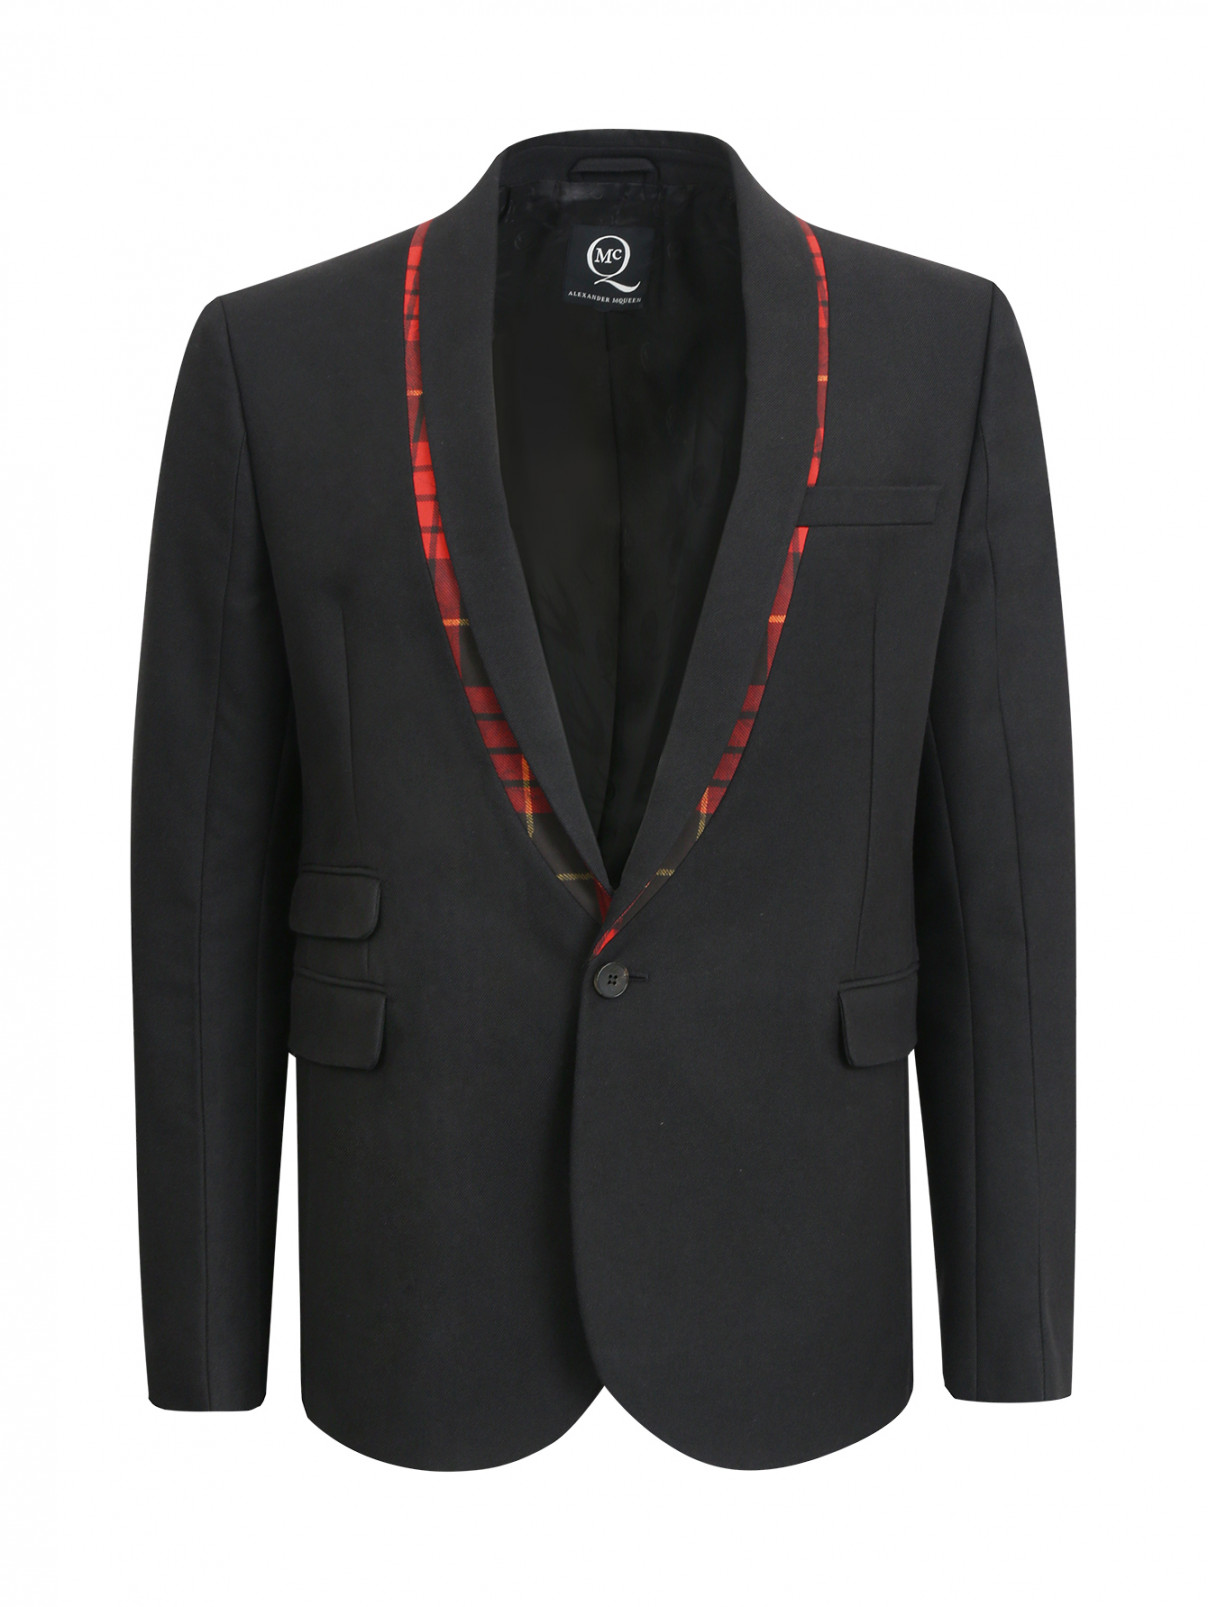 Пиджак с контрастными вставками и накладными карманами Alexander McQueen  –  Общий вид  – Цвет:  Черный